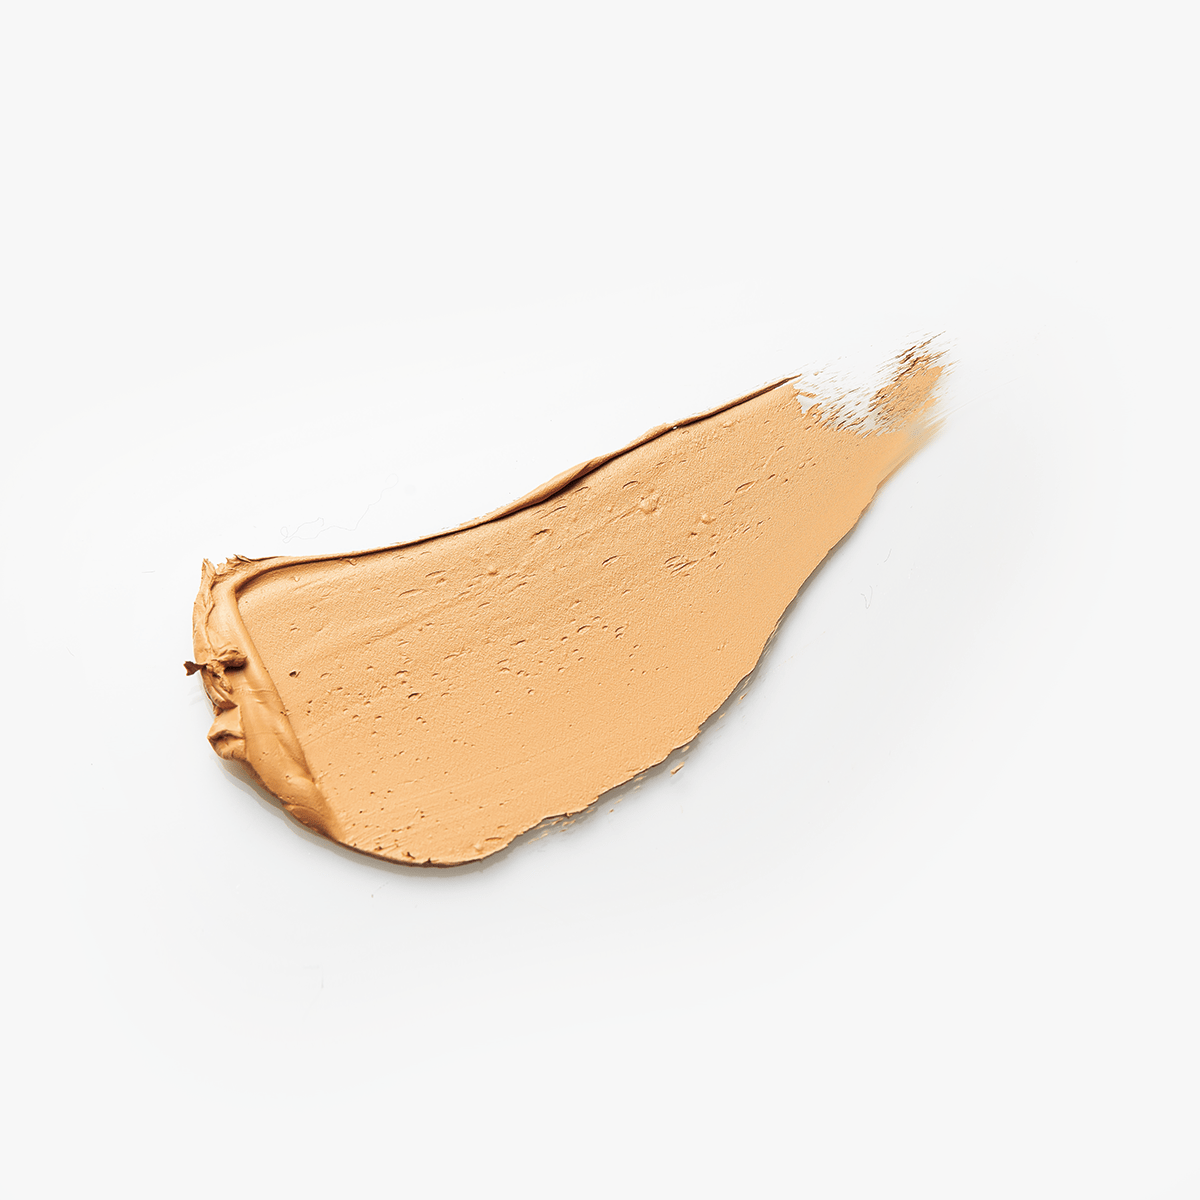 米肌(MAIHADA) つやしずく スキンケアコンシーラーの商品画像サムネ2 